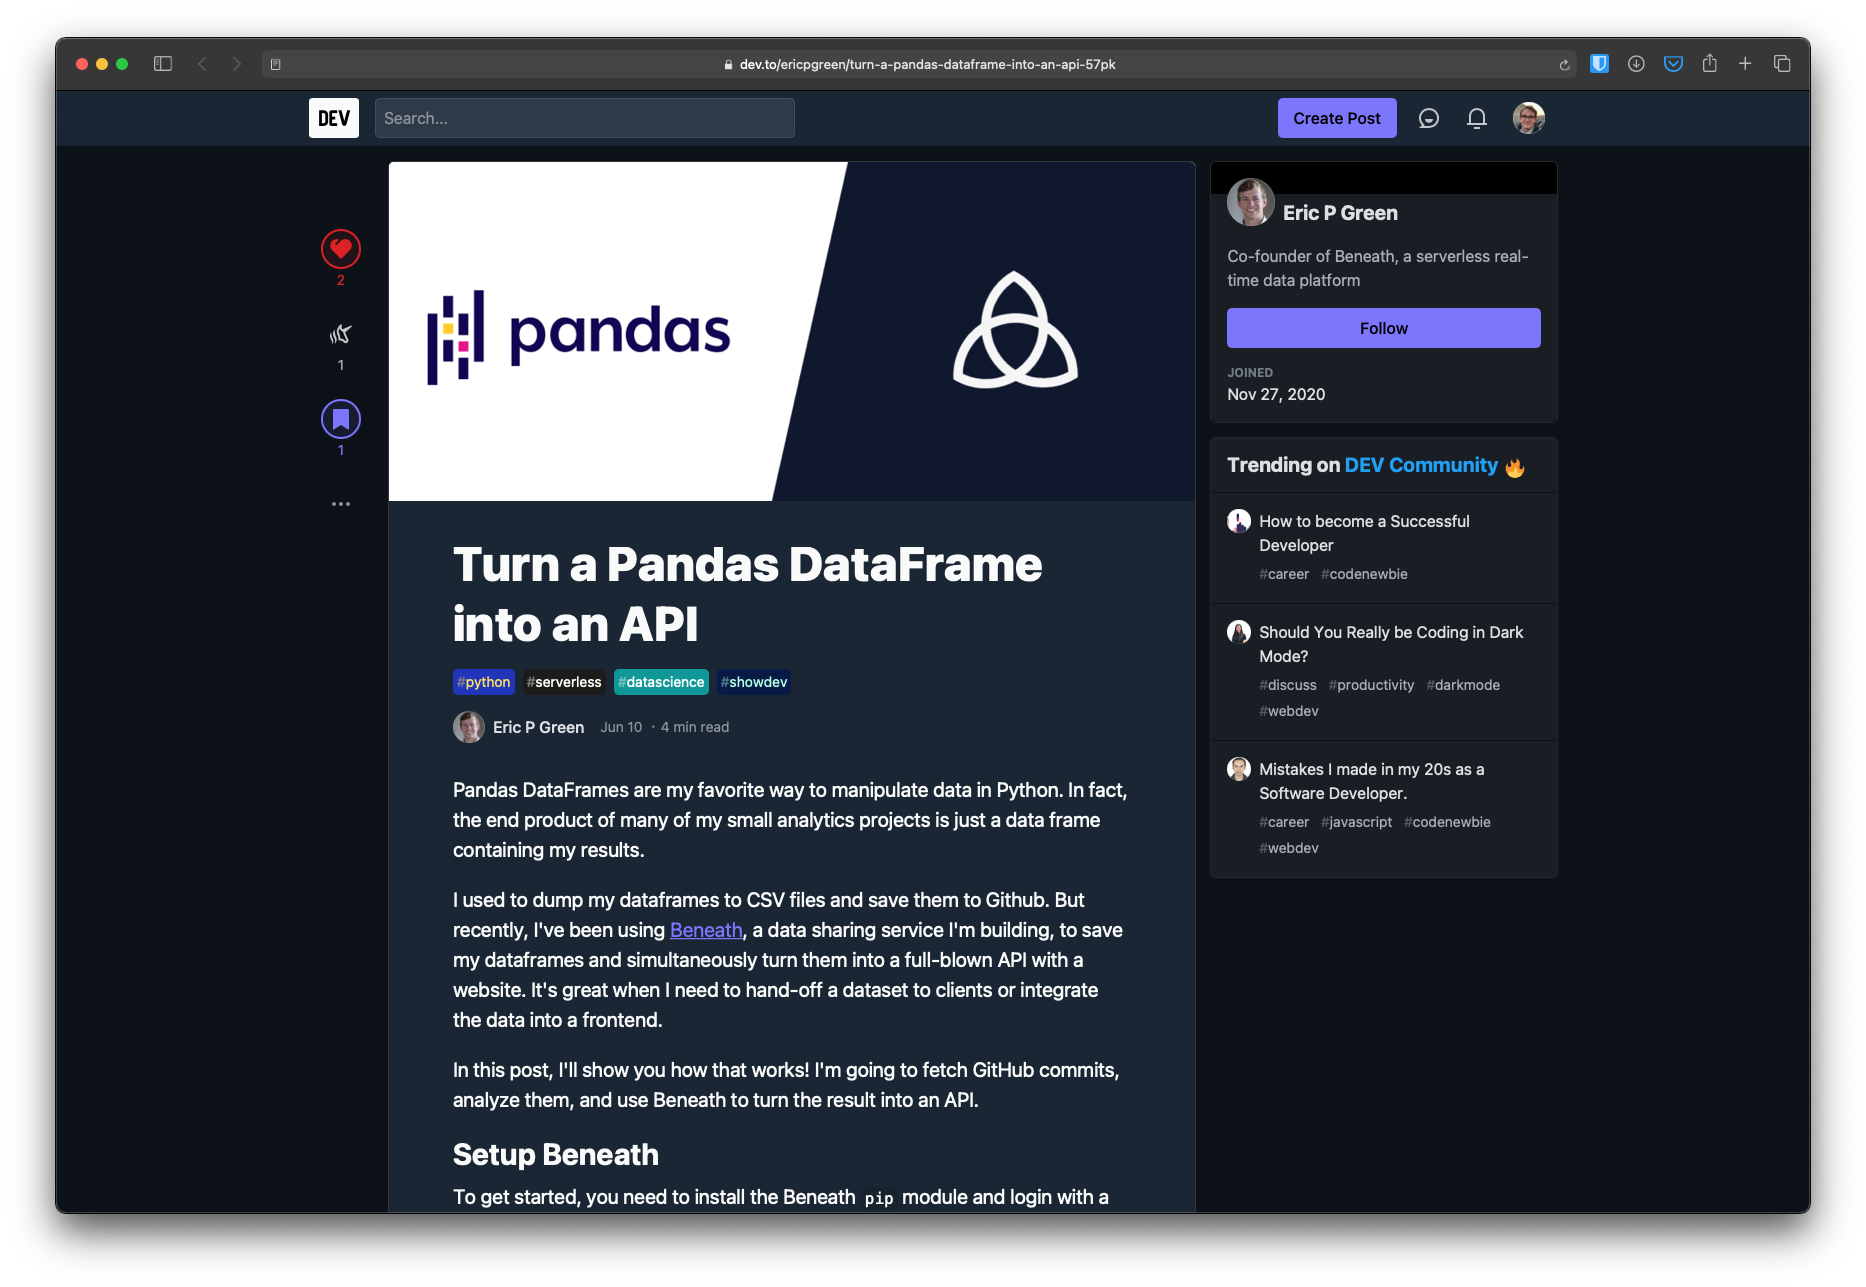 Turning a Pandas DataFrame into an API